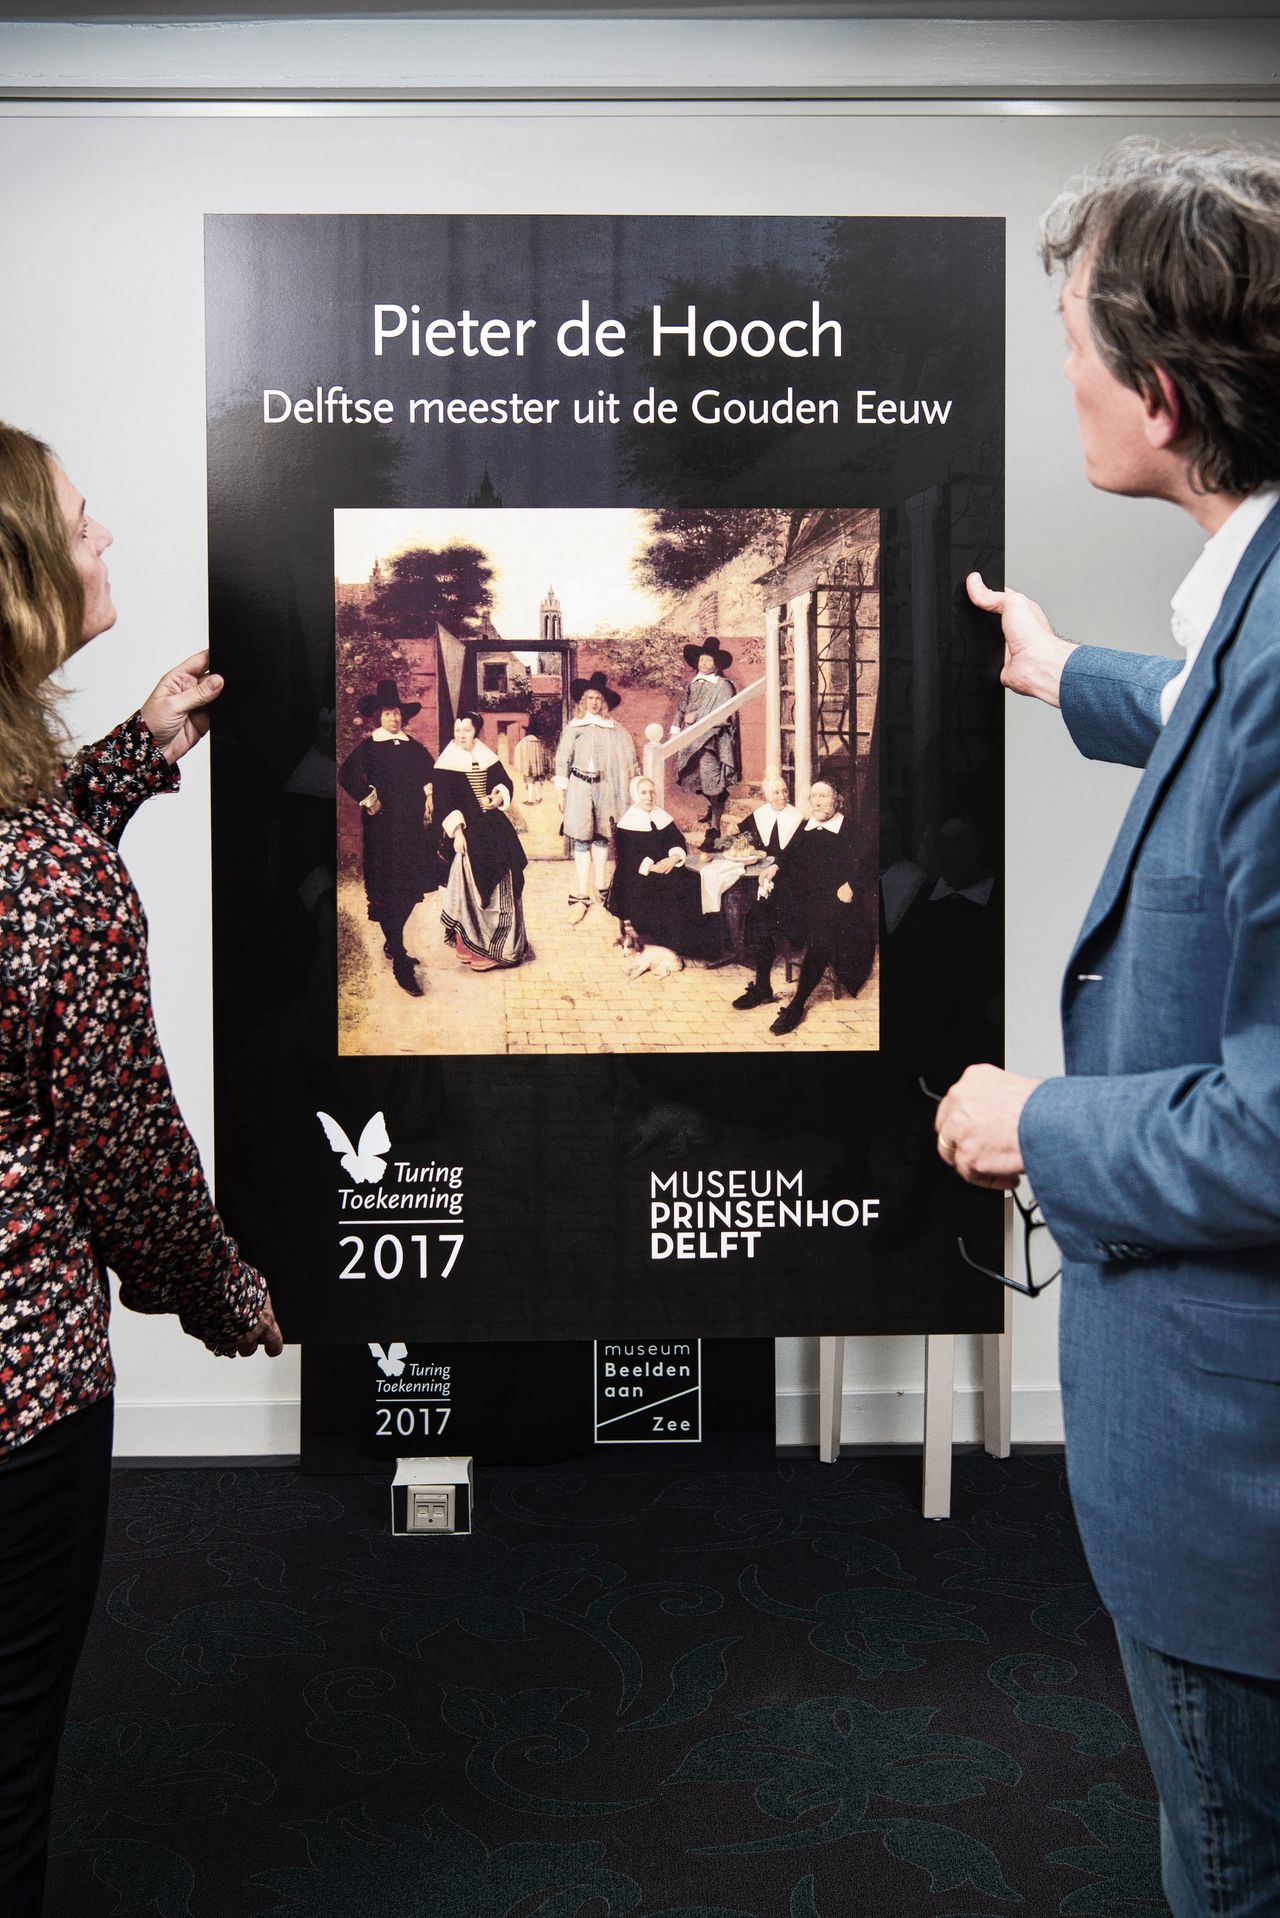 Françoise en Pieter Geelen wilden niet herkenbaar op de foto. Ze staan voor een affiche van de expositie in Delft over Pieter de Hooch, die ze met 500.000 euro steunen.